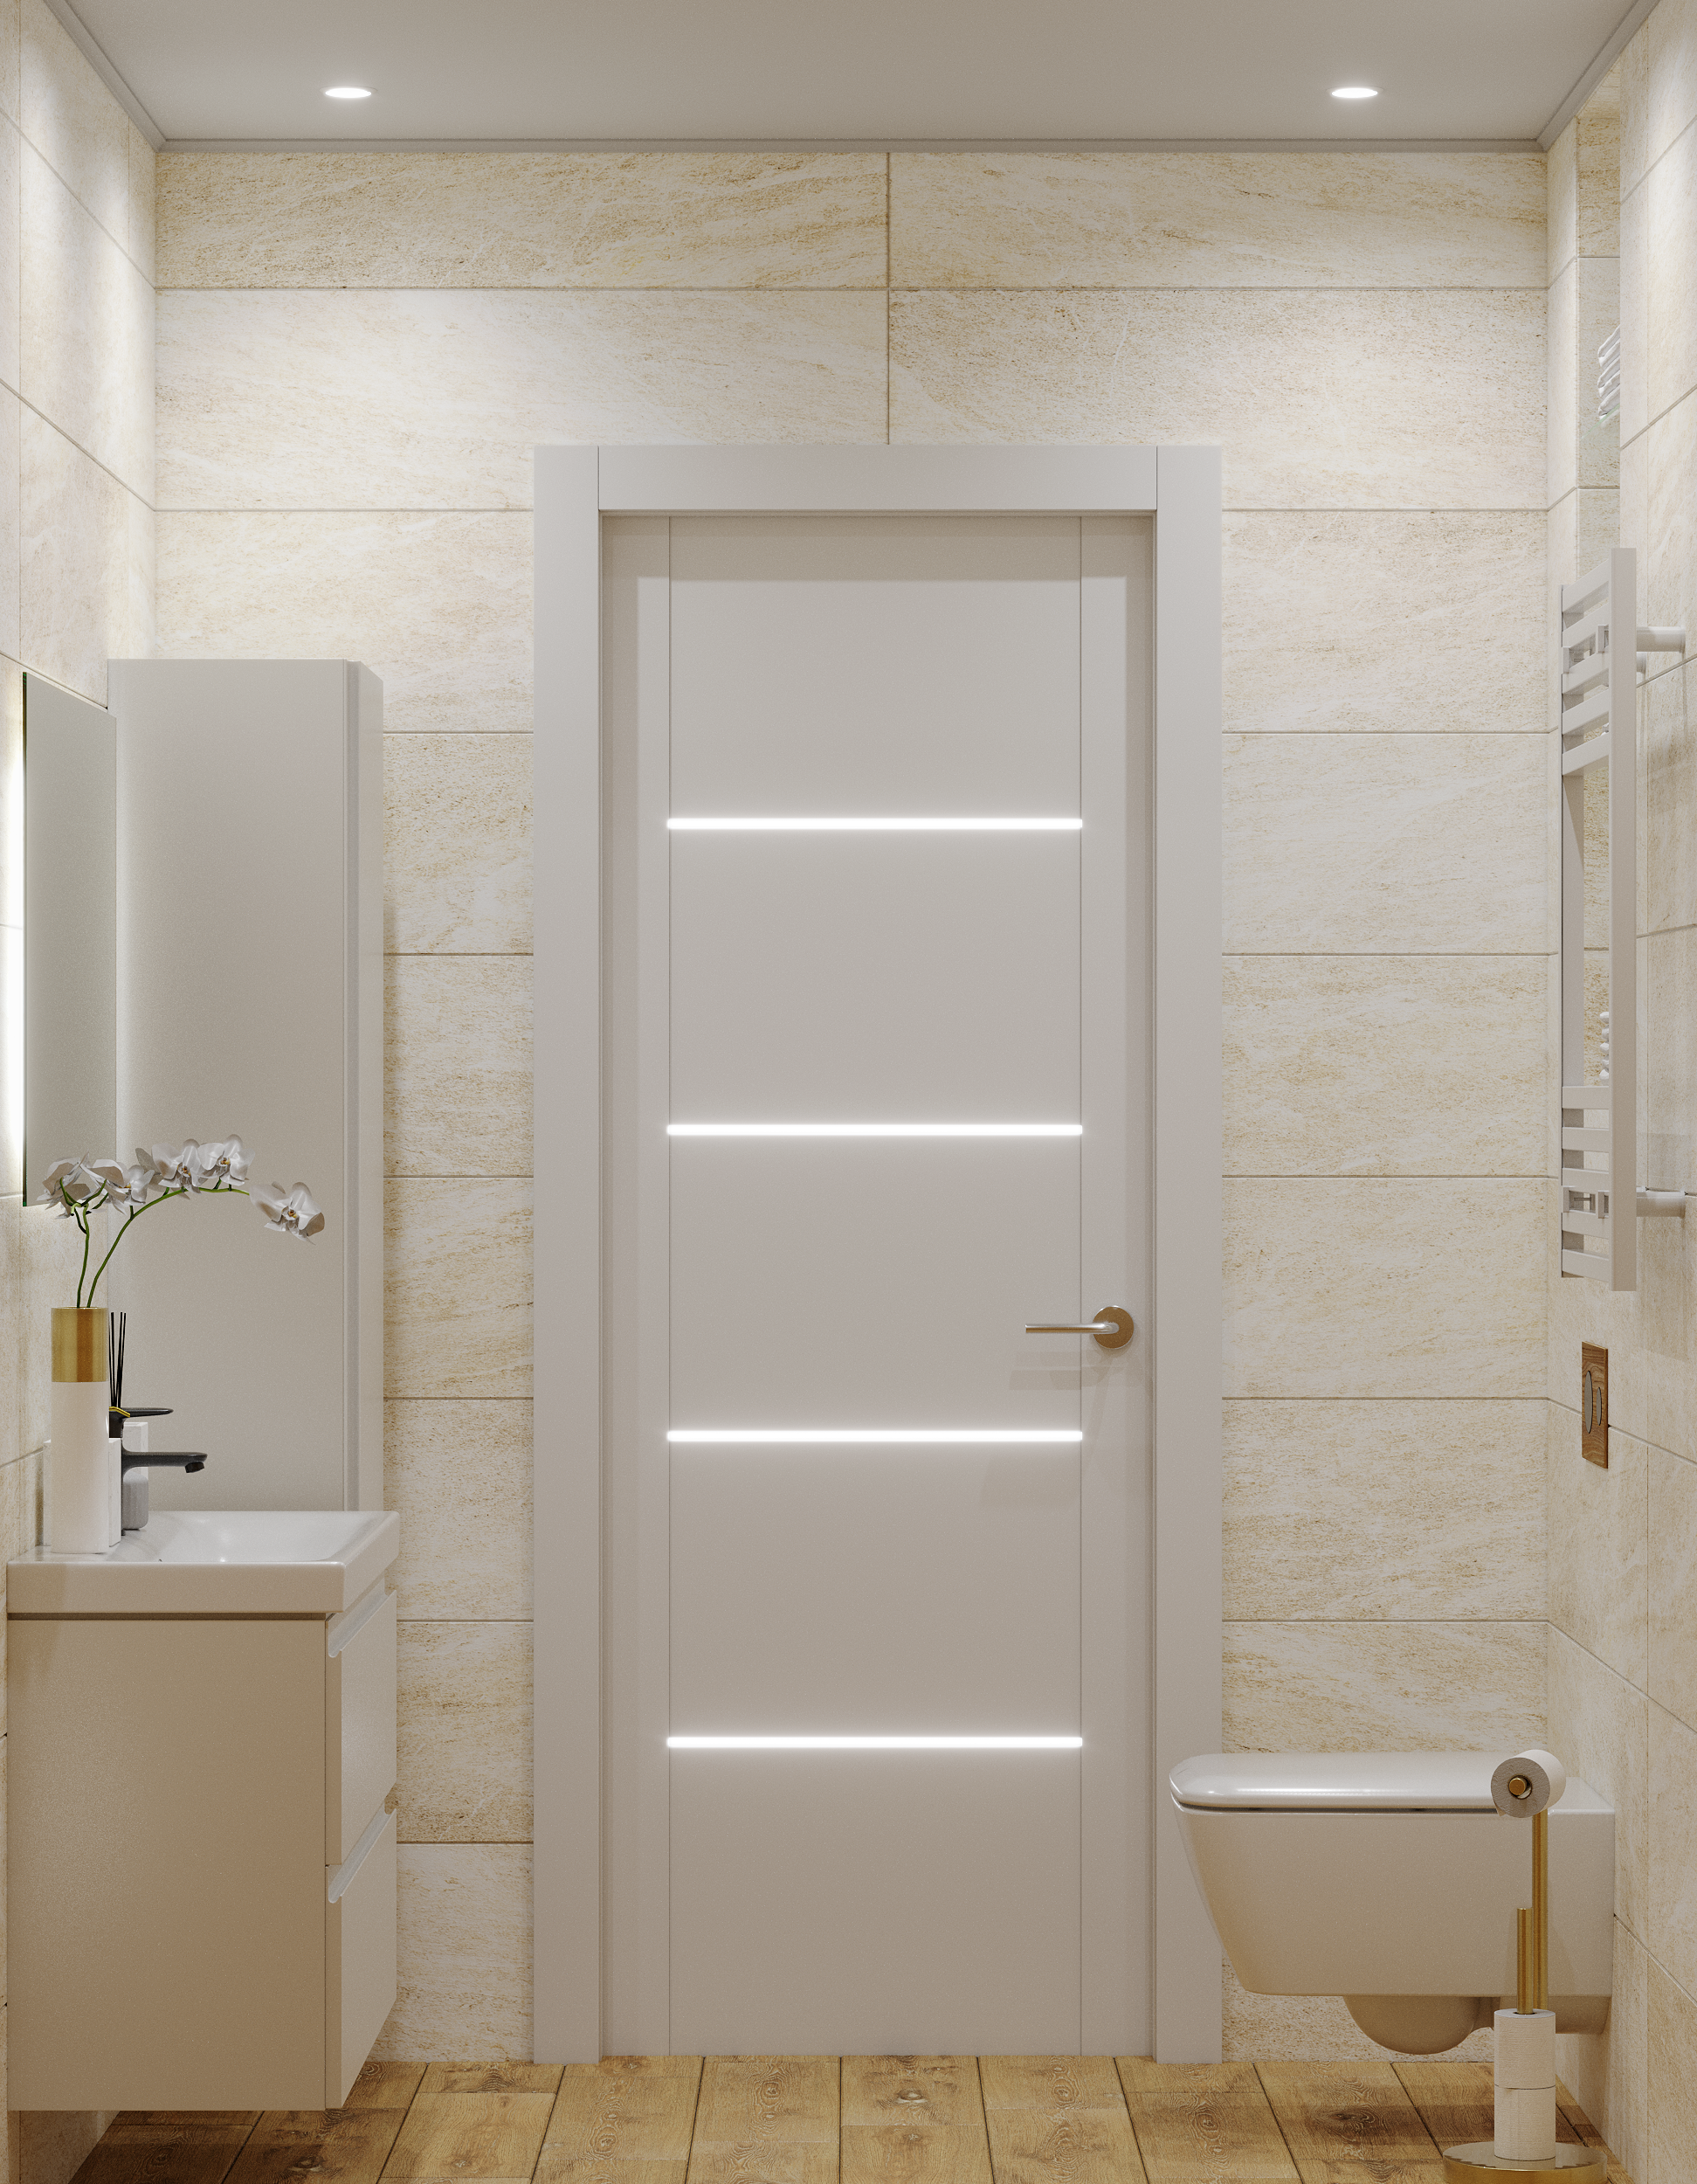 Интерьер ванной cветовыми линиями, рейками с подсветкой, подсветкой настенной, подсветкой светодиодной и с подсветкой